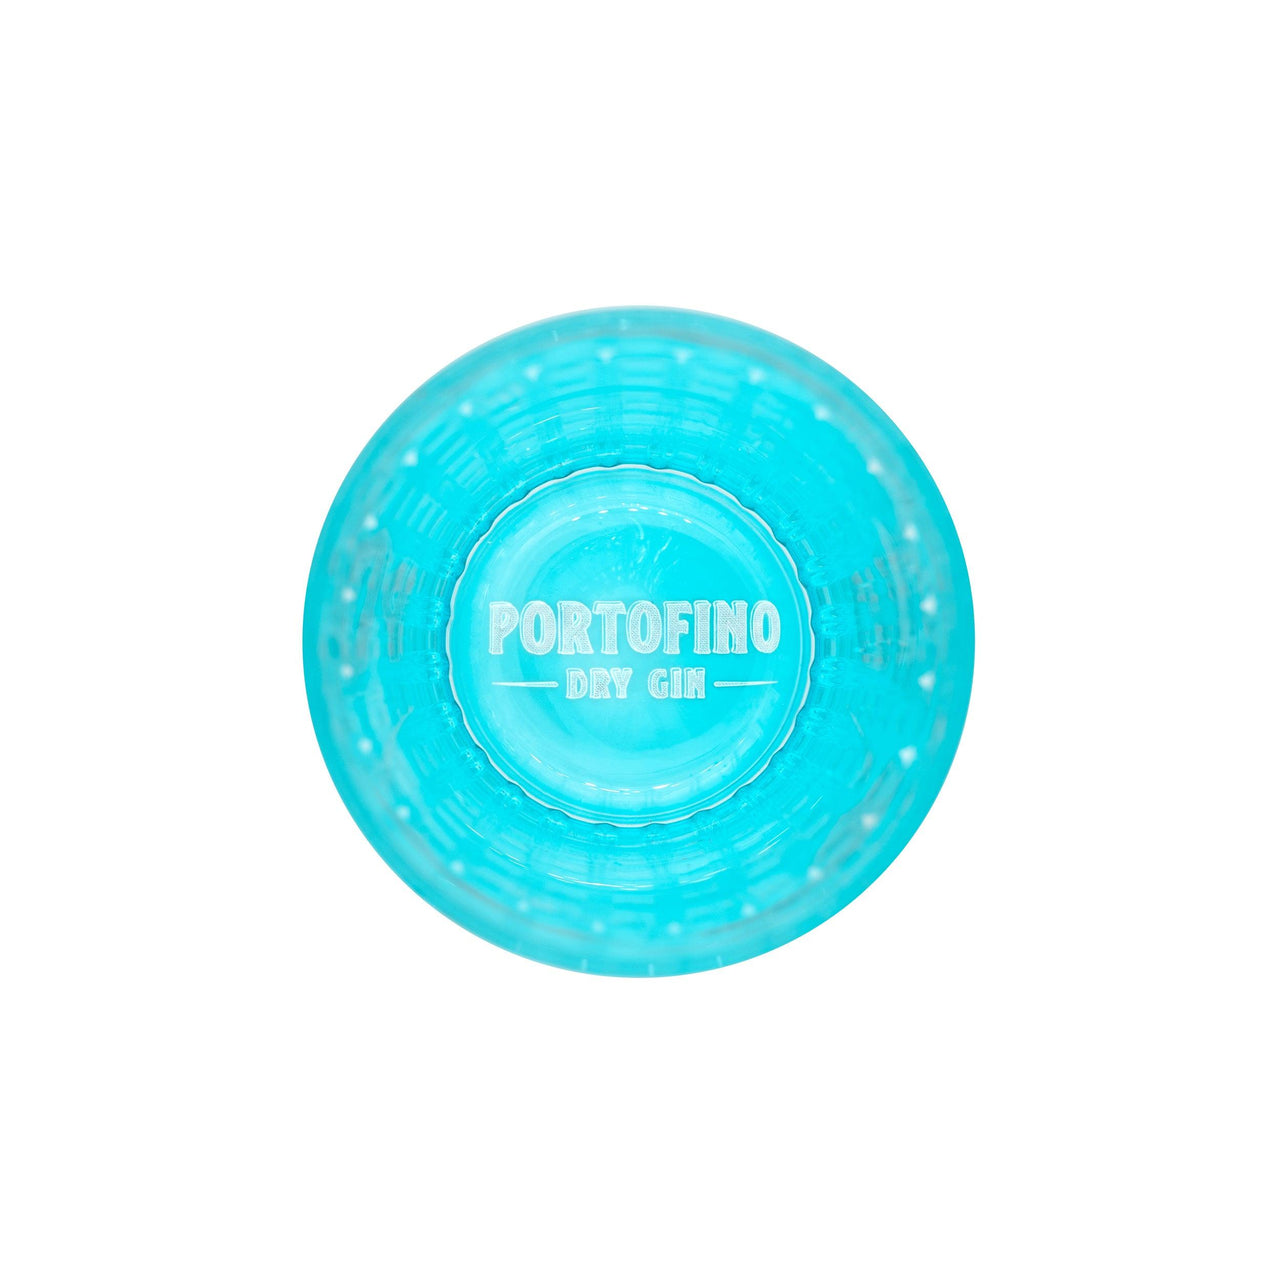 TUMBLER PORTOFINO - Portofino Dry Gin